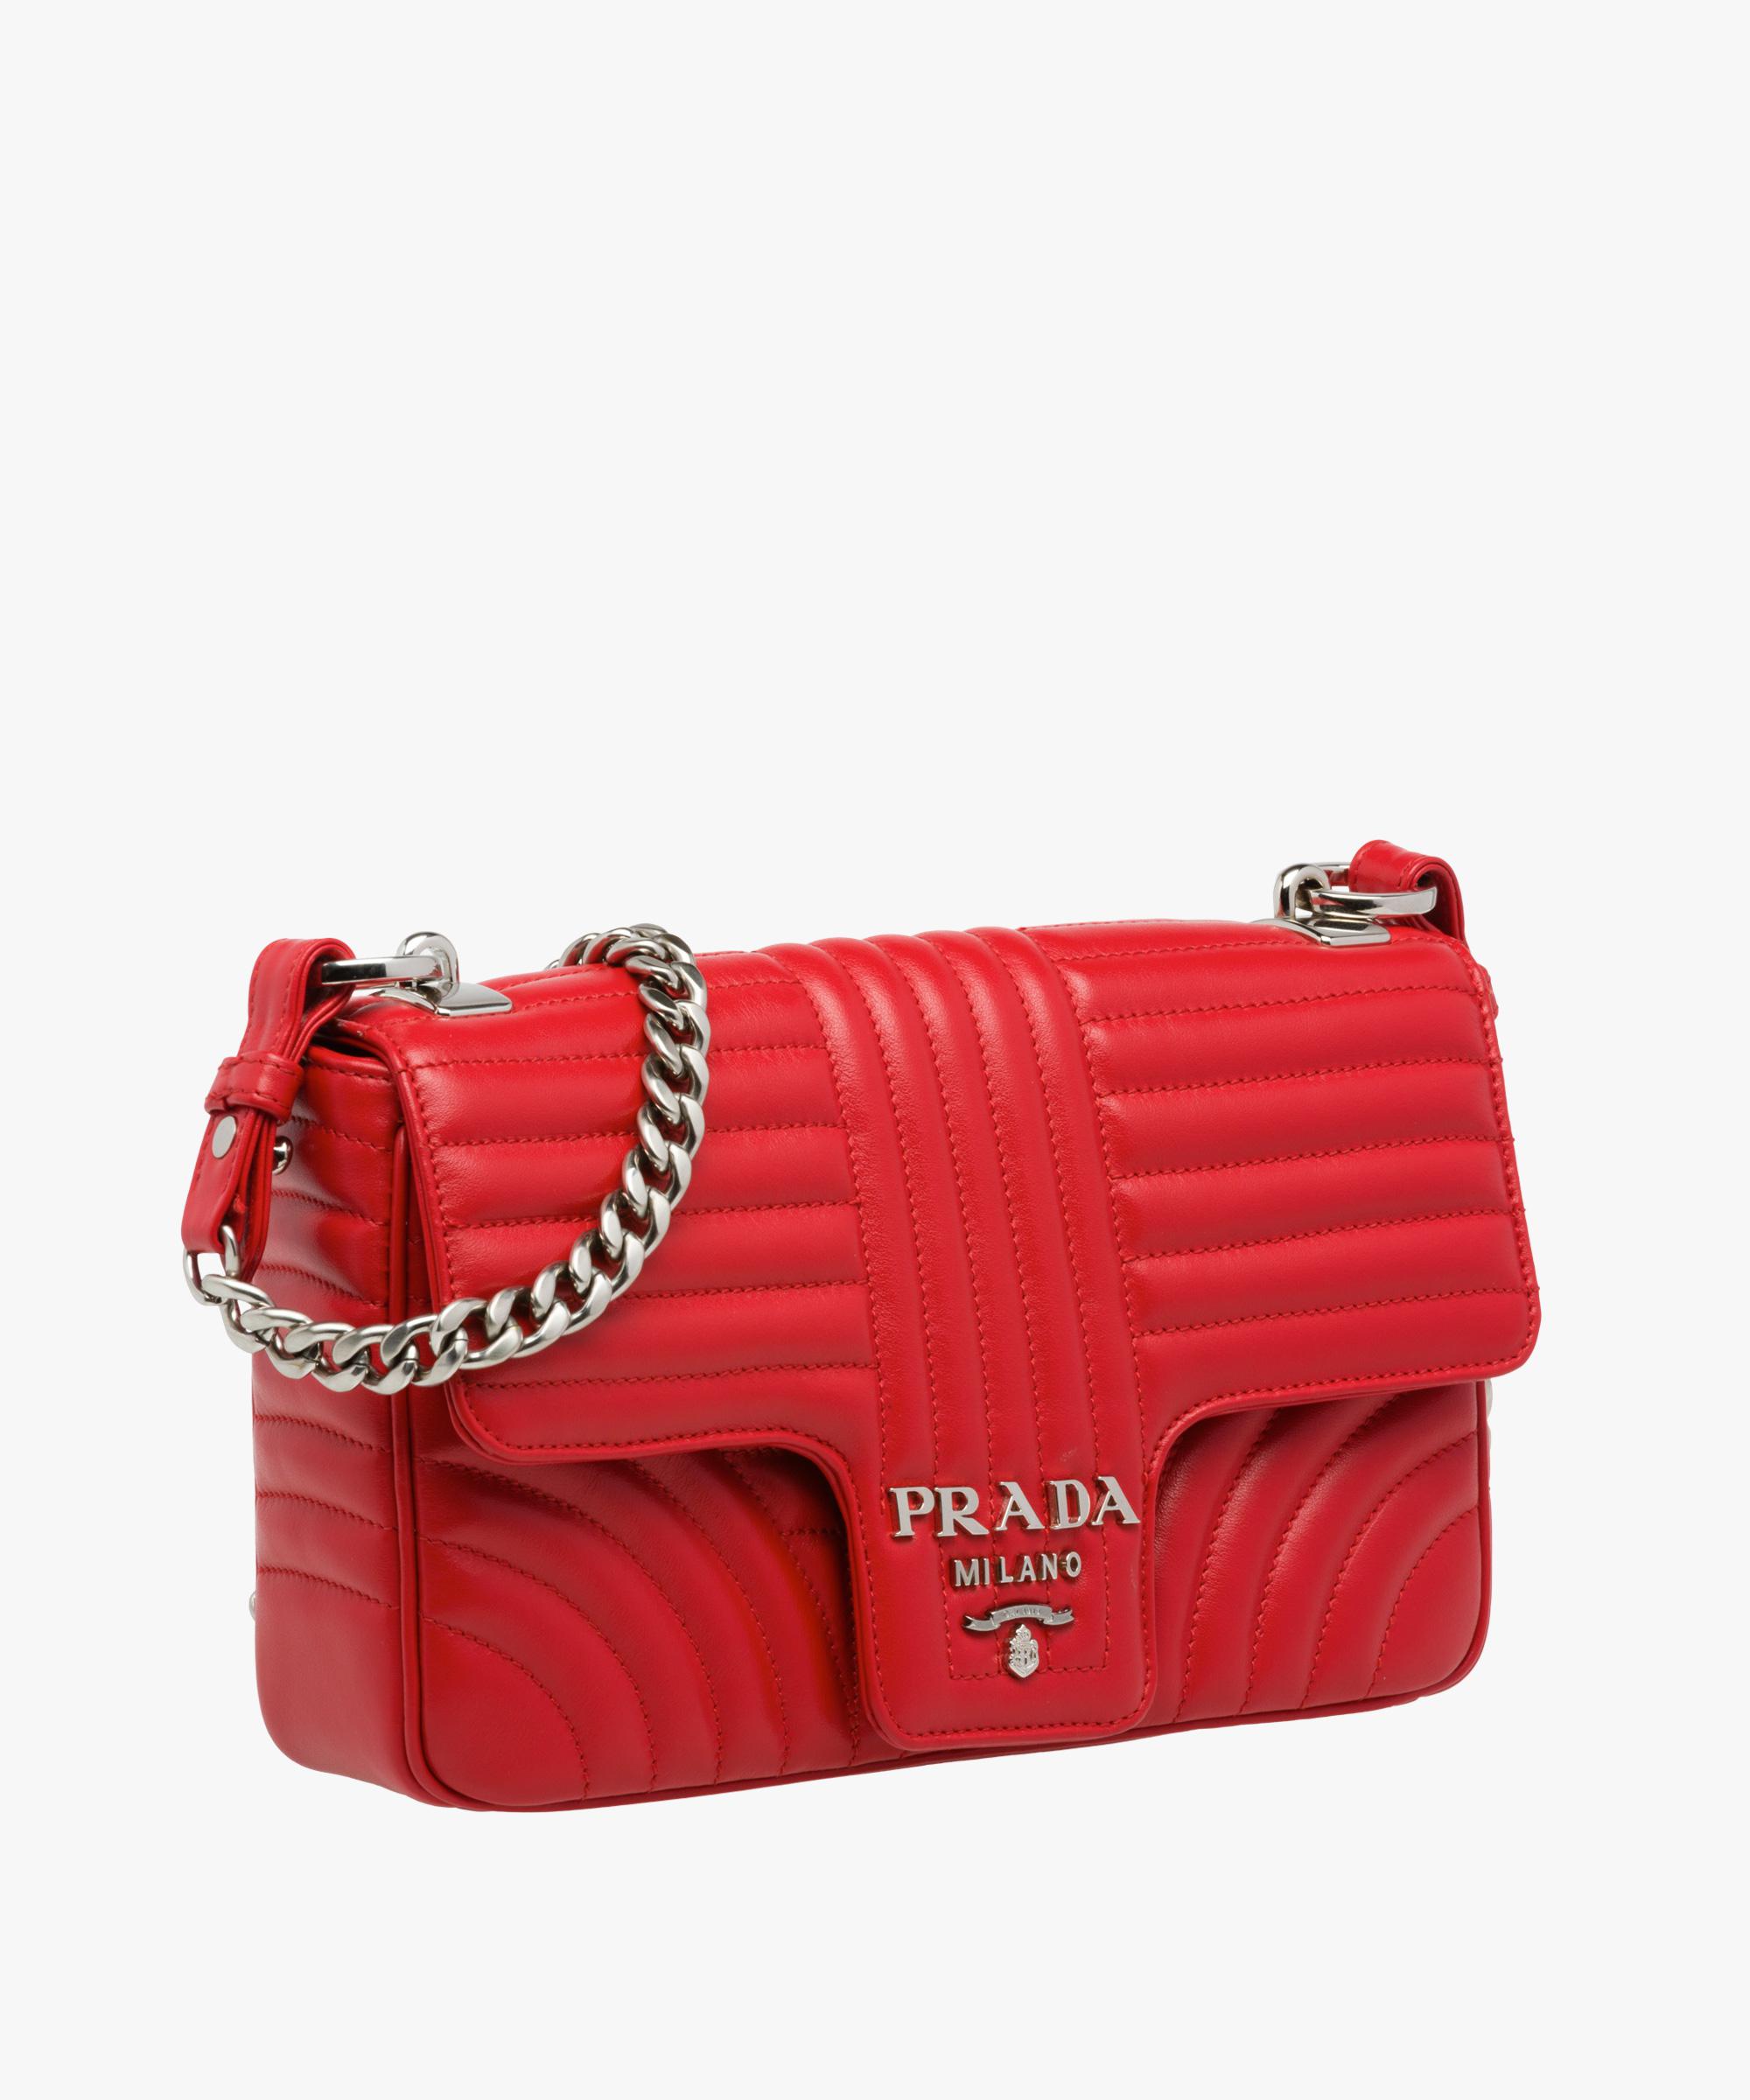 prada red shoulder bag - OFF67 